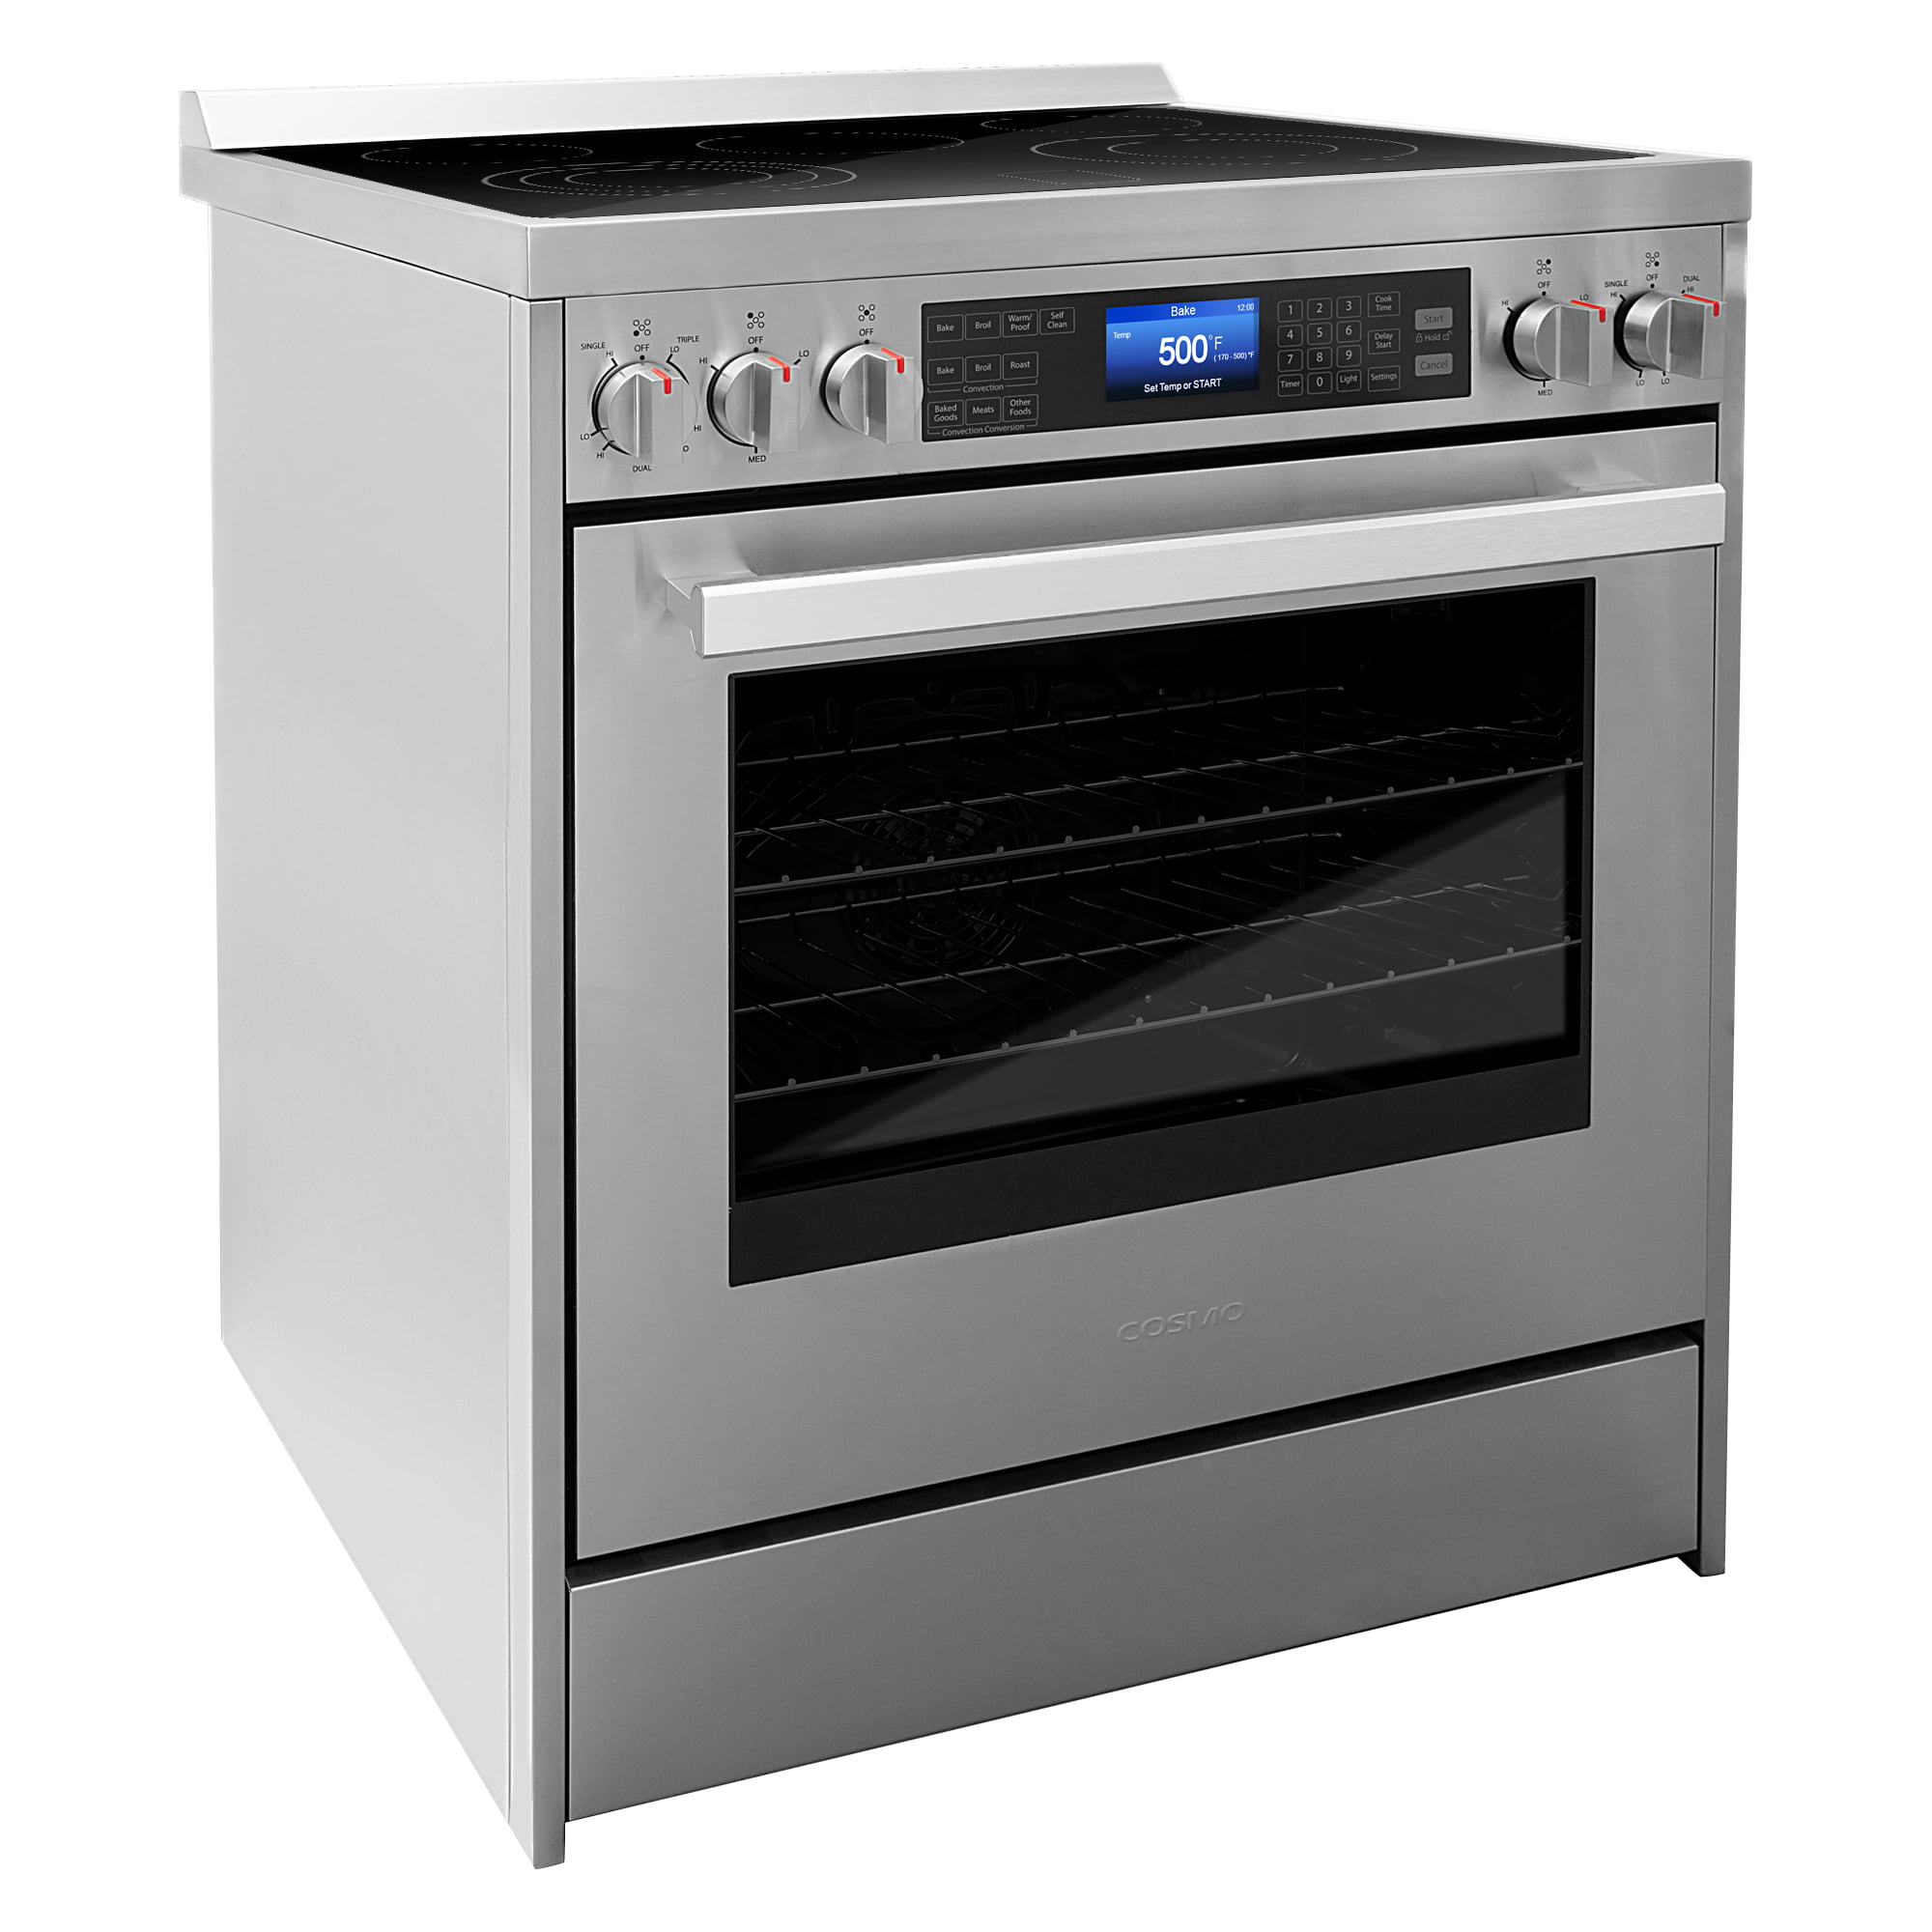 Venus Home appliances strengthens product portfolio, unveils electric  ovens, ET Retail